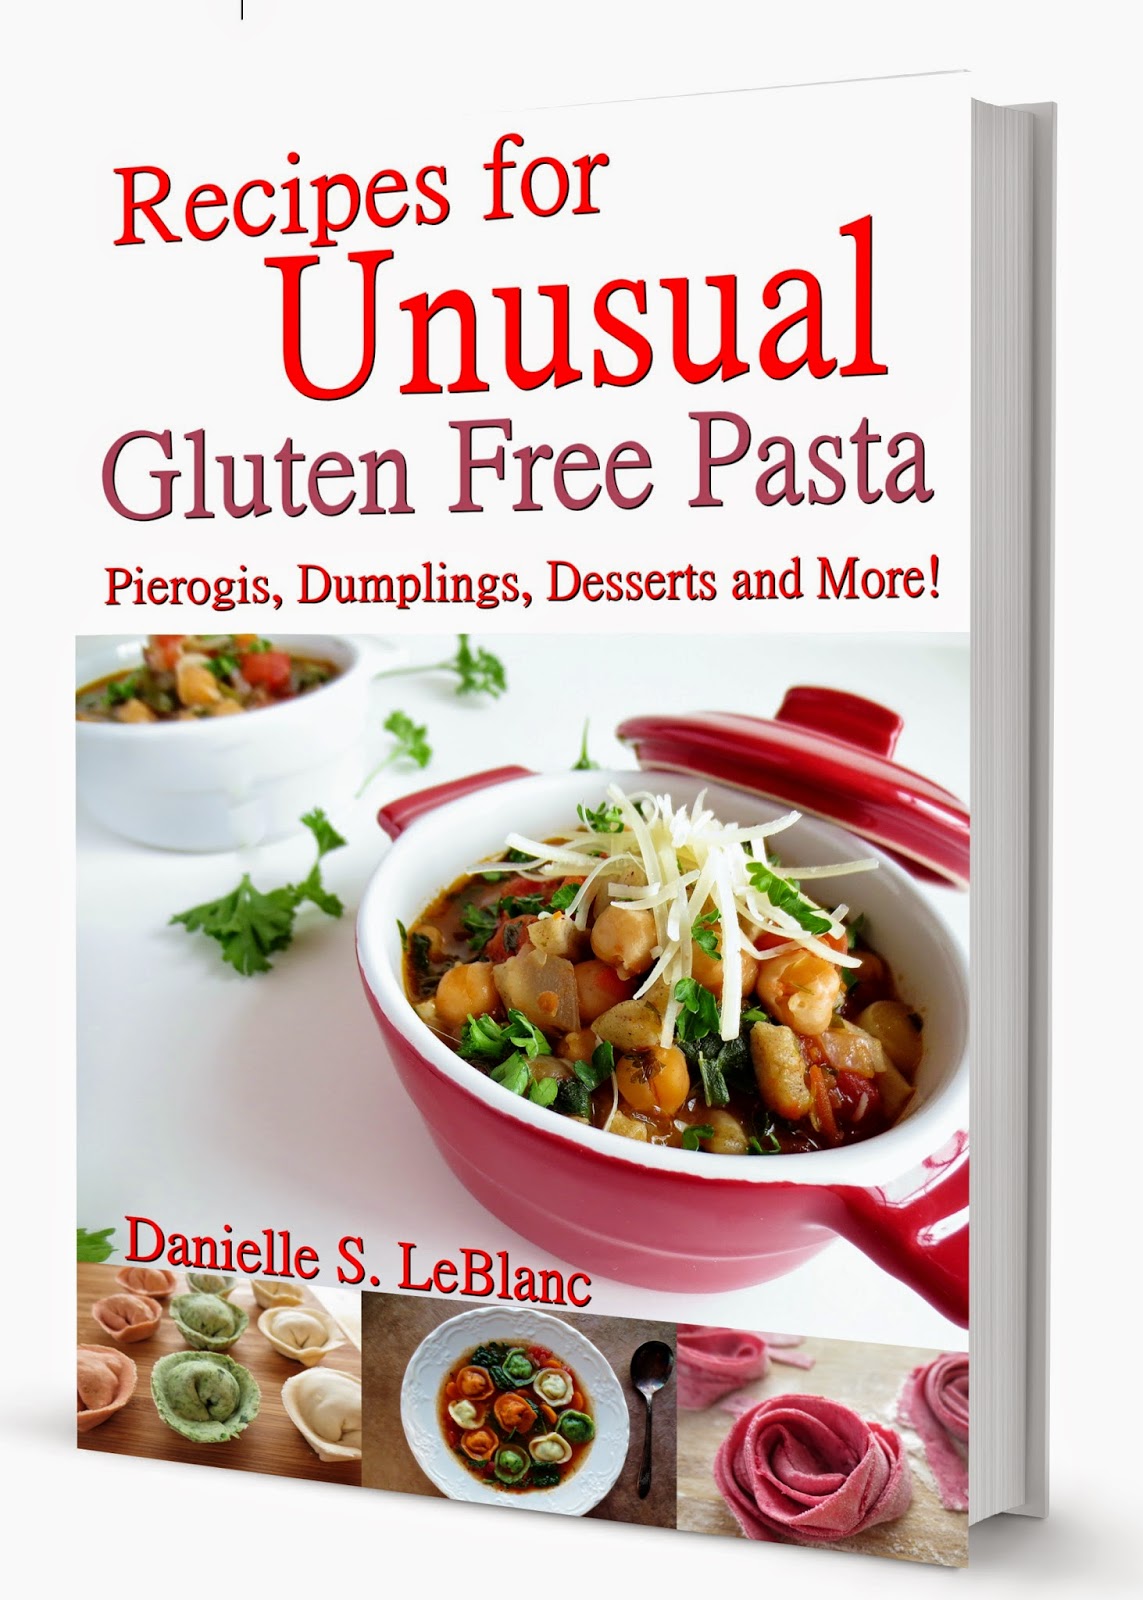 http://www.amazon.com/Recipes-Unusual-Gluten-Free-Pasta-ebook/dp/B00KOBSVDI/ref=sr_1_1?s=books&ie=UTF8&qid=1401805745&sr=1-1&keywords=recipes+for+unusual+gluten+free+pasta